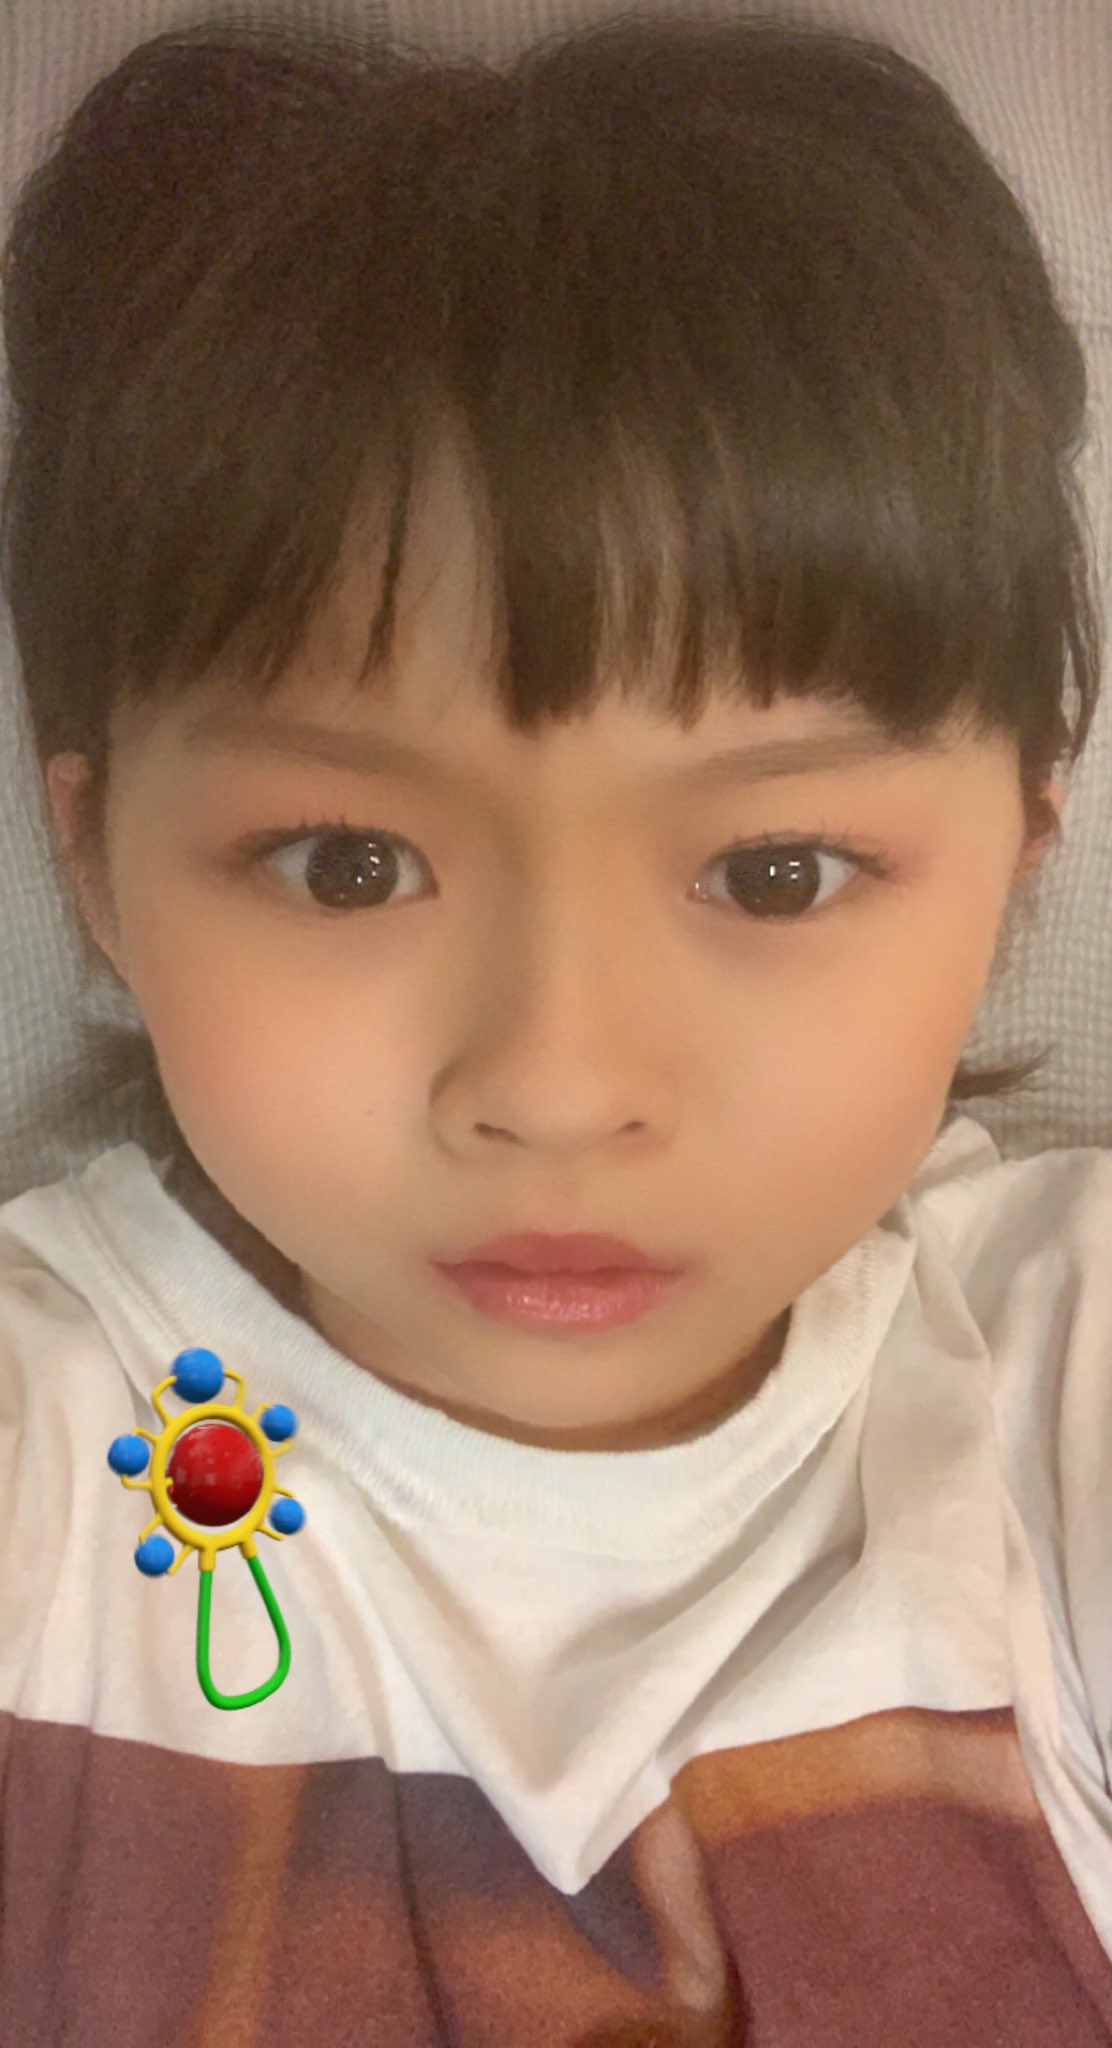 伊藤沙莉 赤ちゃん加工 の自撮り写真にファン驚き めちゃべっぴんさん 目ヂカラ強っ Oricon News